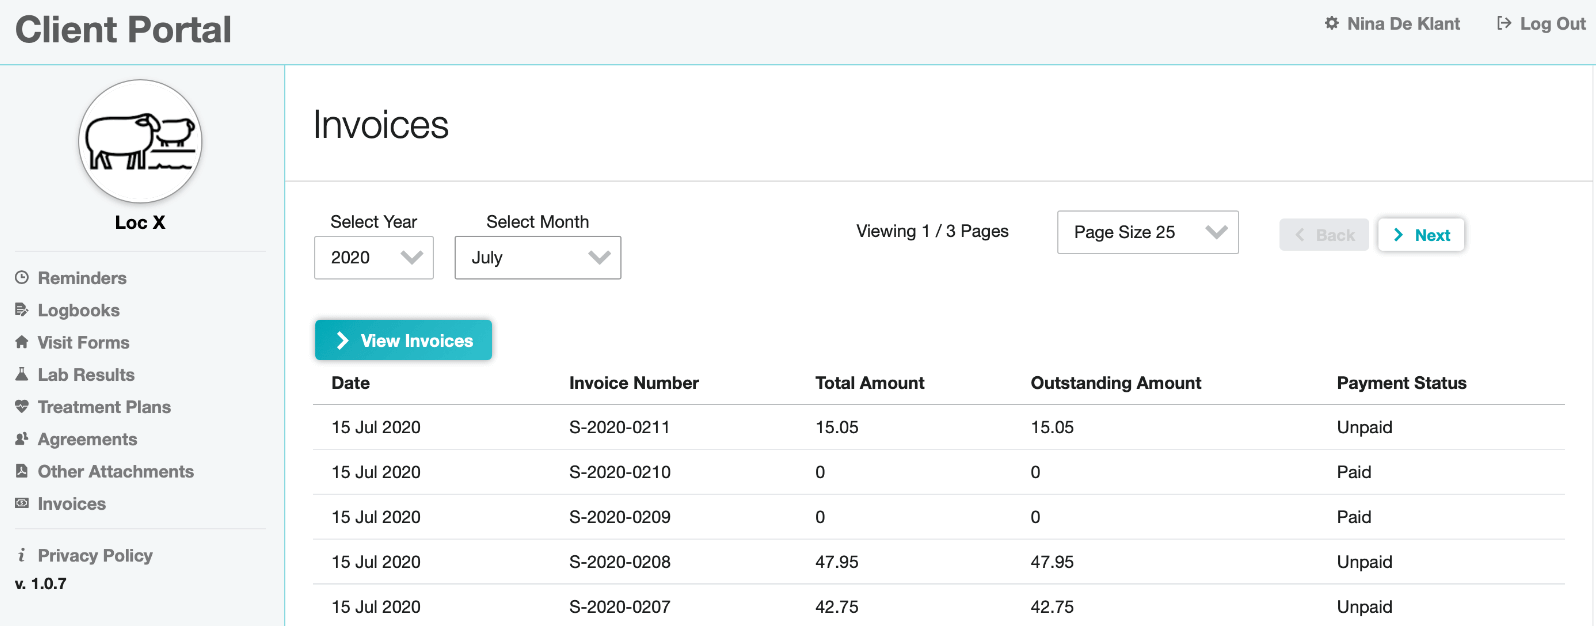 Invoice in client portal screenshot (EN)